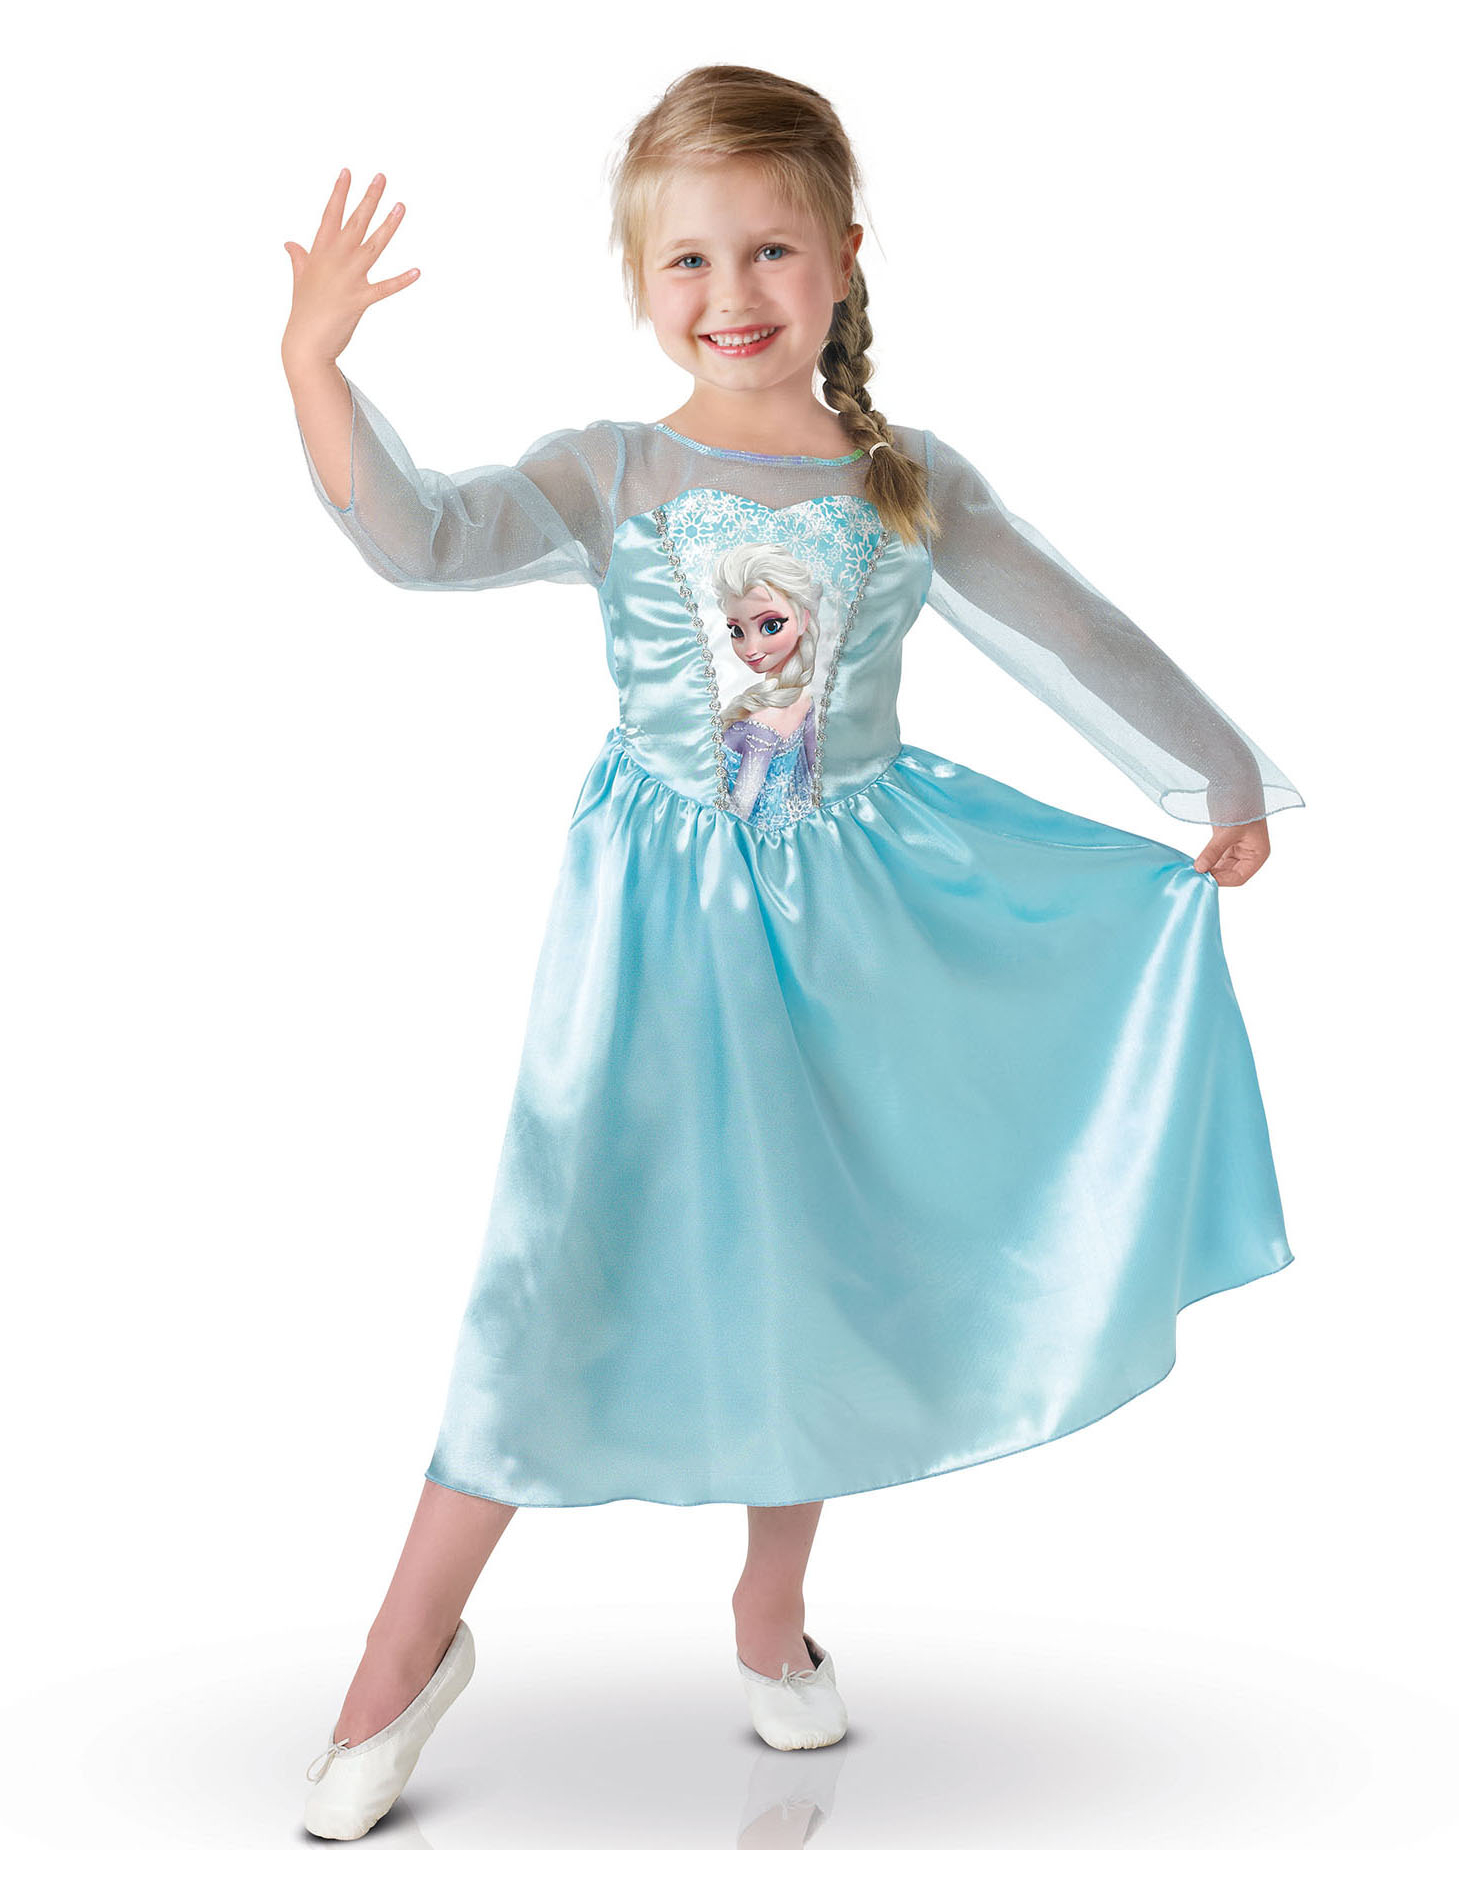 Disneys Frozen Die Eiskönigin Elsa Classic Kinder Kostüm Lizenzware hellblau-silber von RUBIES FRANCE